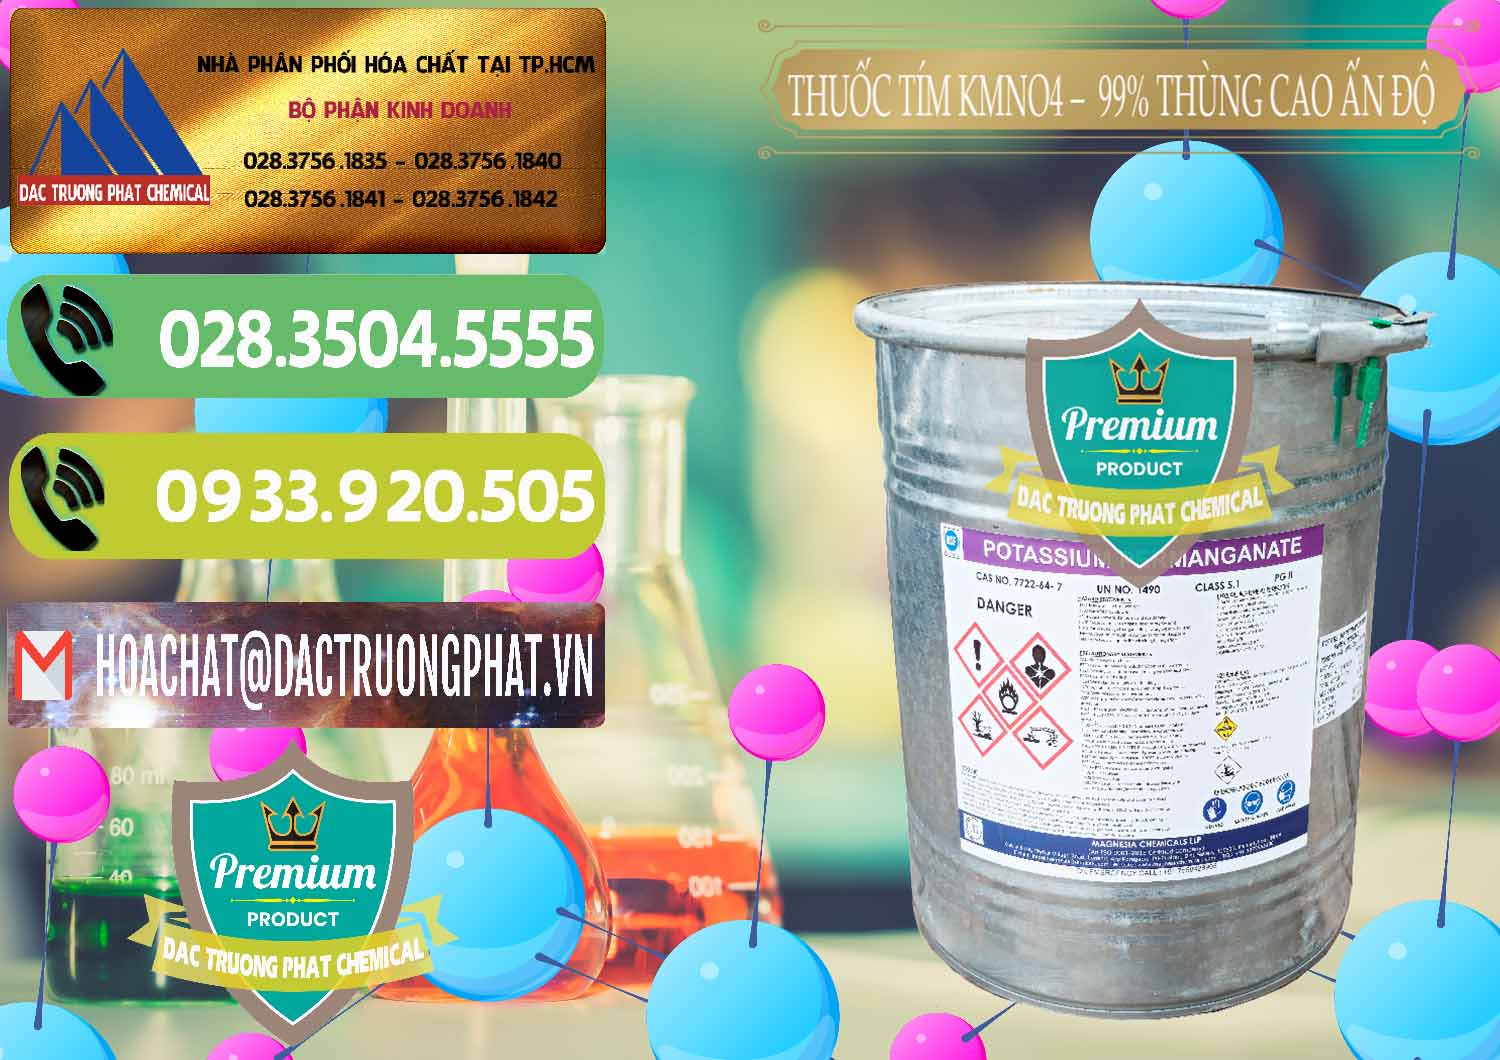 Nơi chuyên bán và cung ứng Thuốc Tím - KMNO4 Thùng Cao 99% Magnesia Chemicals Ấn Độ India - 0164 - Chuyên phân phối ( kinh doanh ) hóa chất tại TP.HCM - hoachatmientay.vn